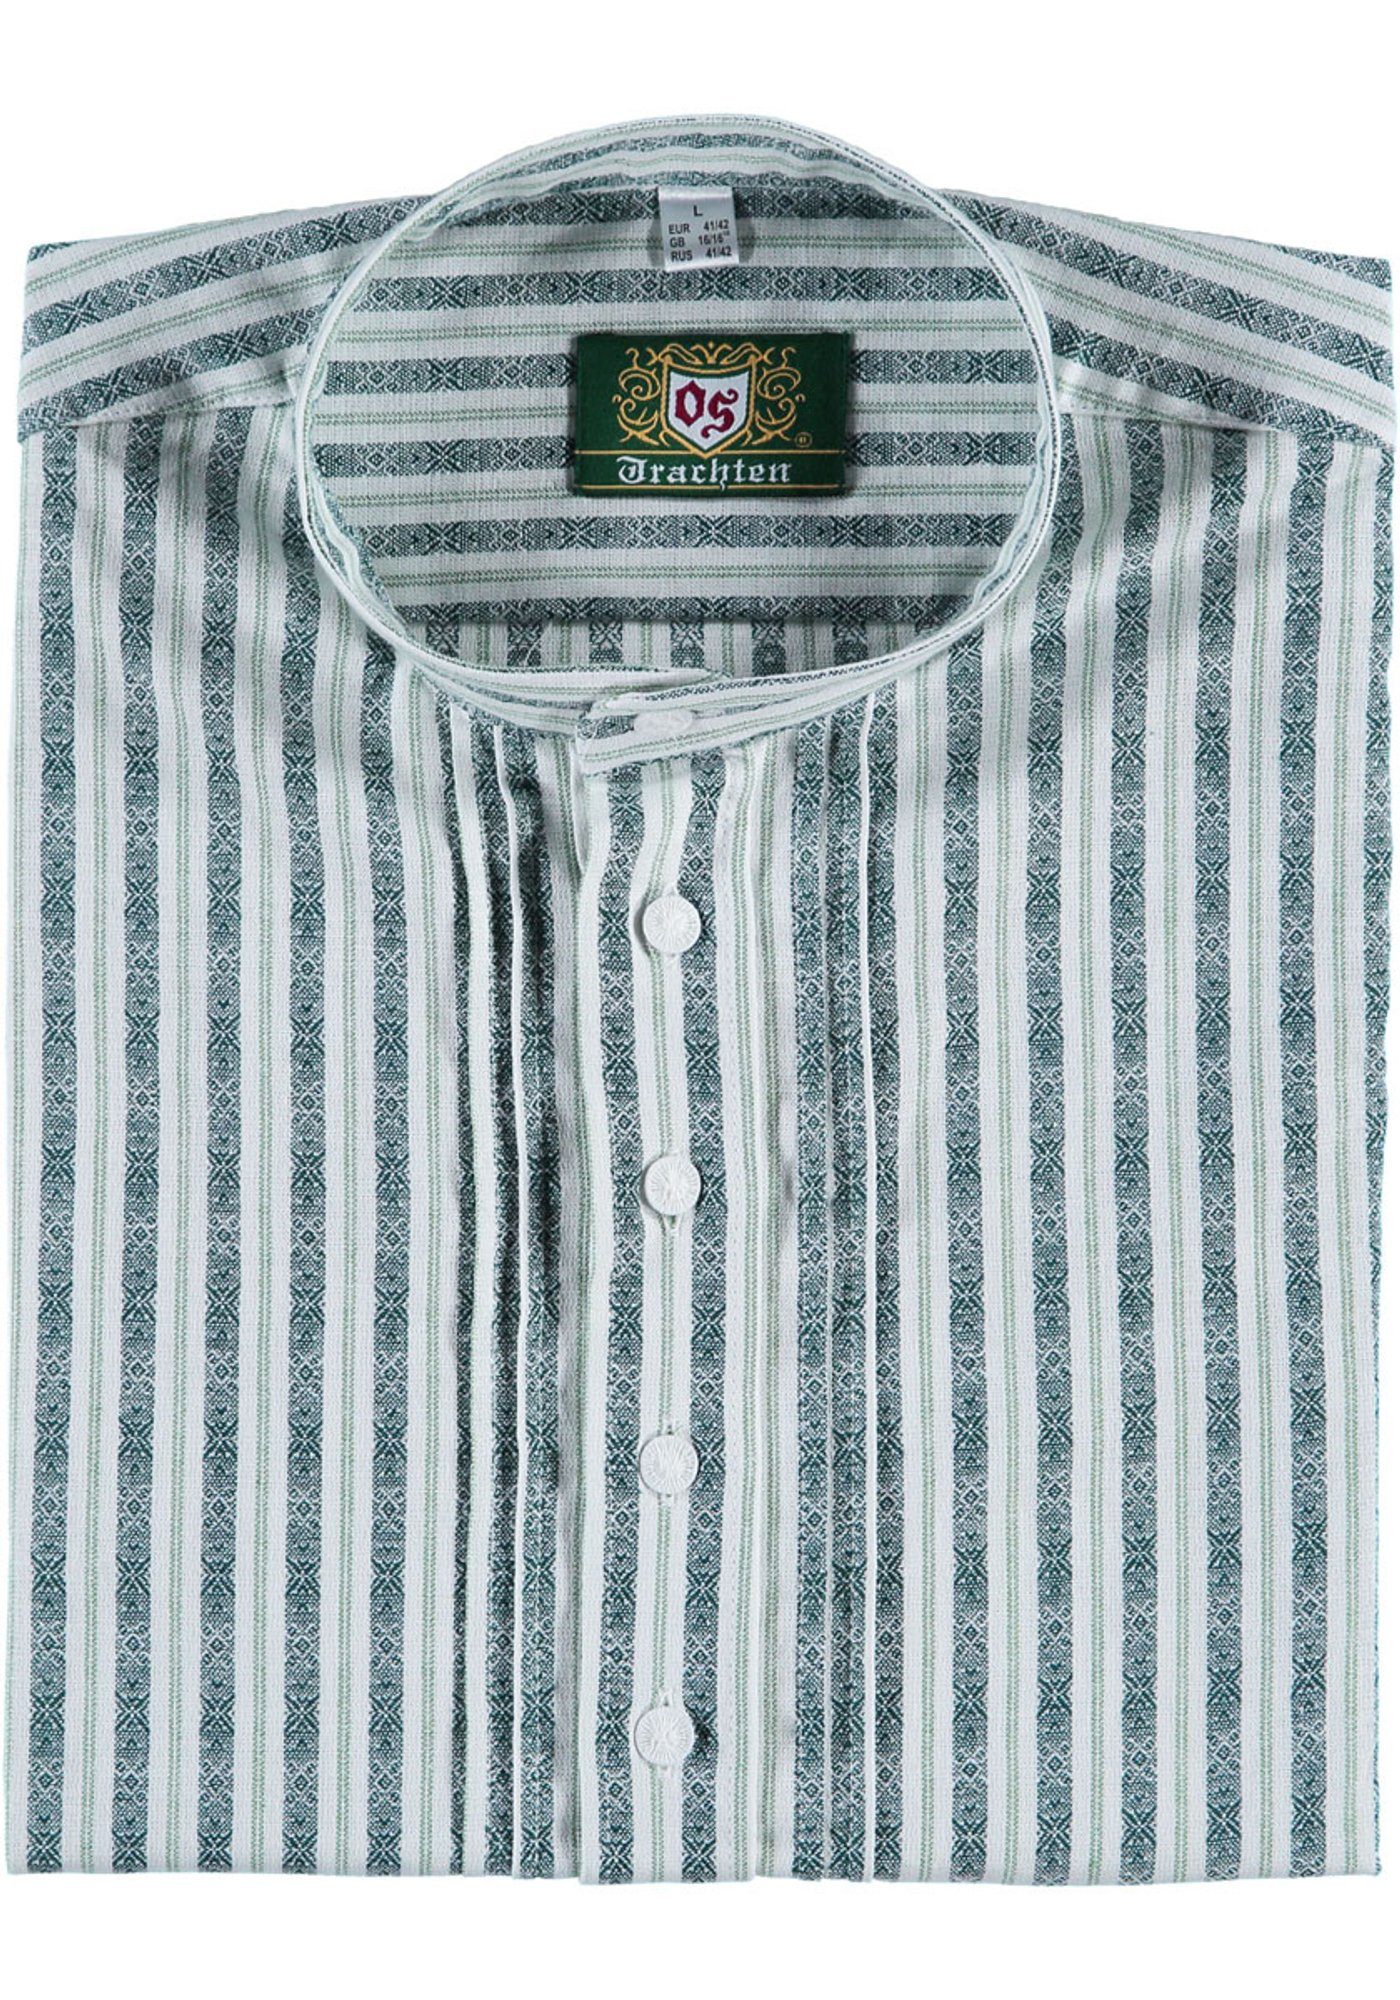 OS-Trachten Trachtenhemd Awosa Herren Langarmhemd Schlupfform, mit Stehbundkragen trachtengrün